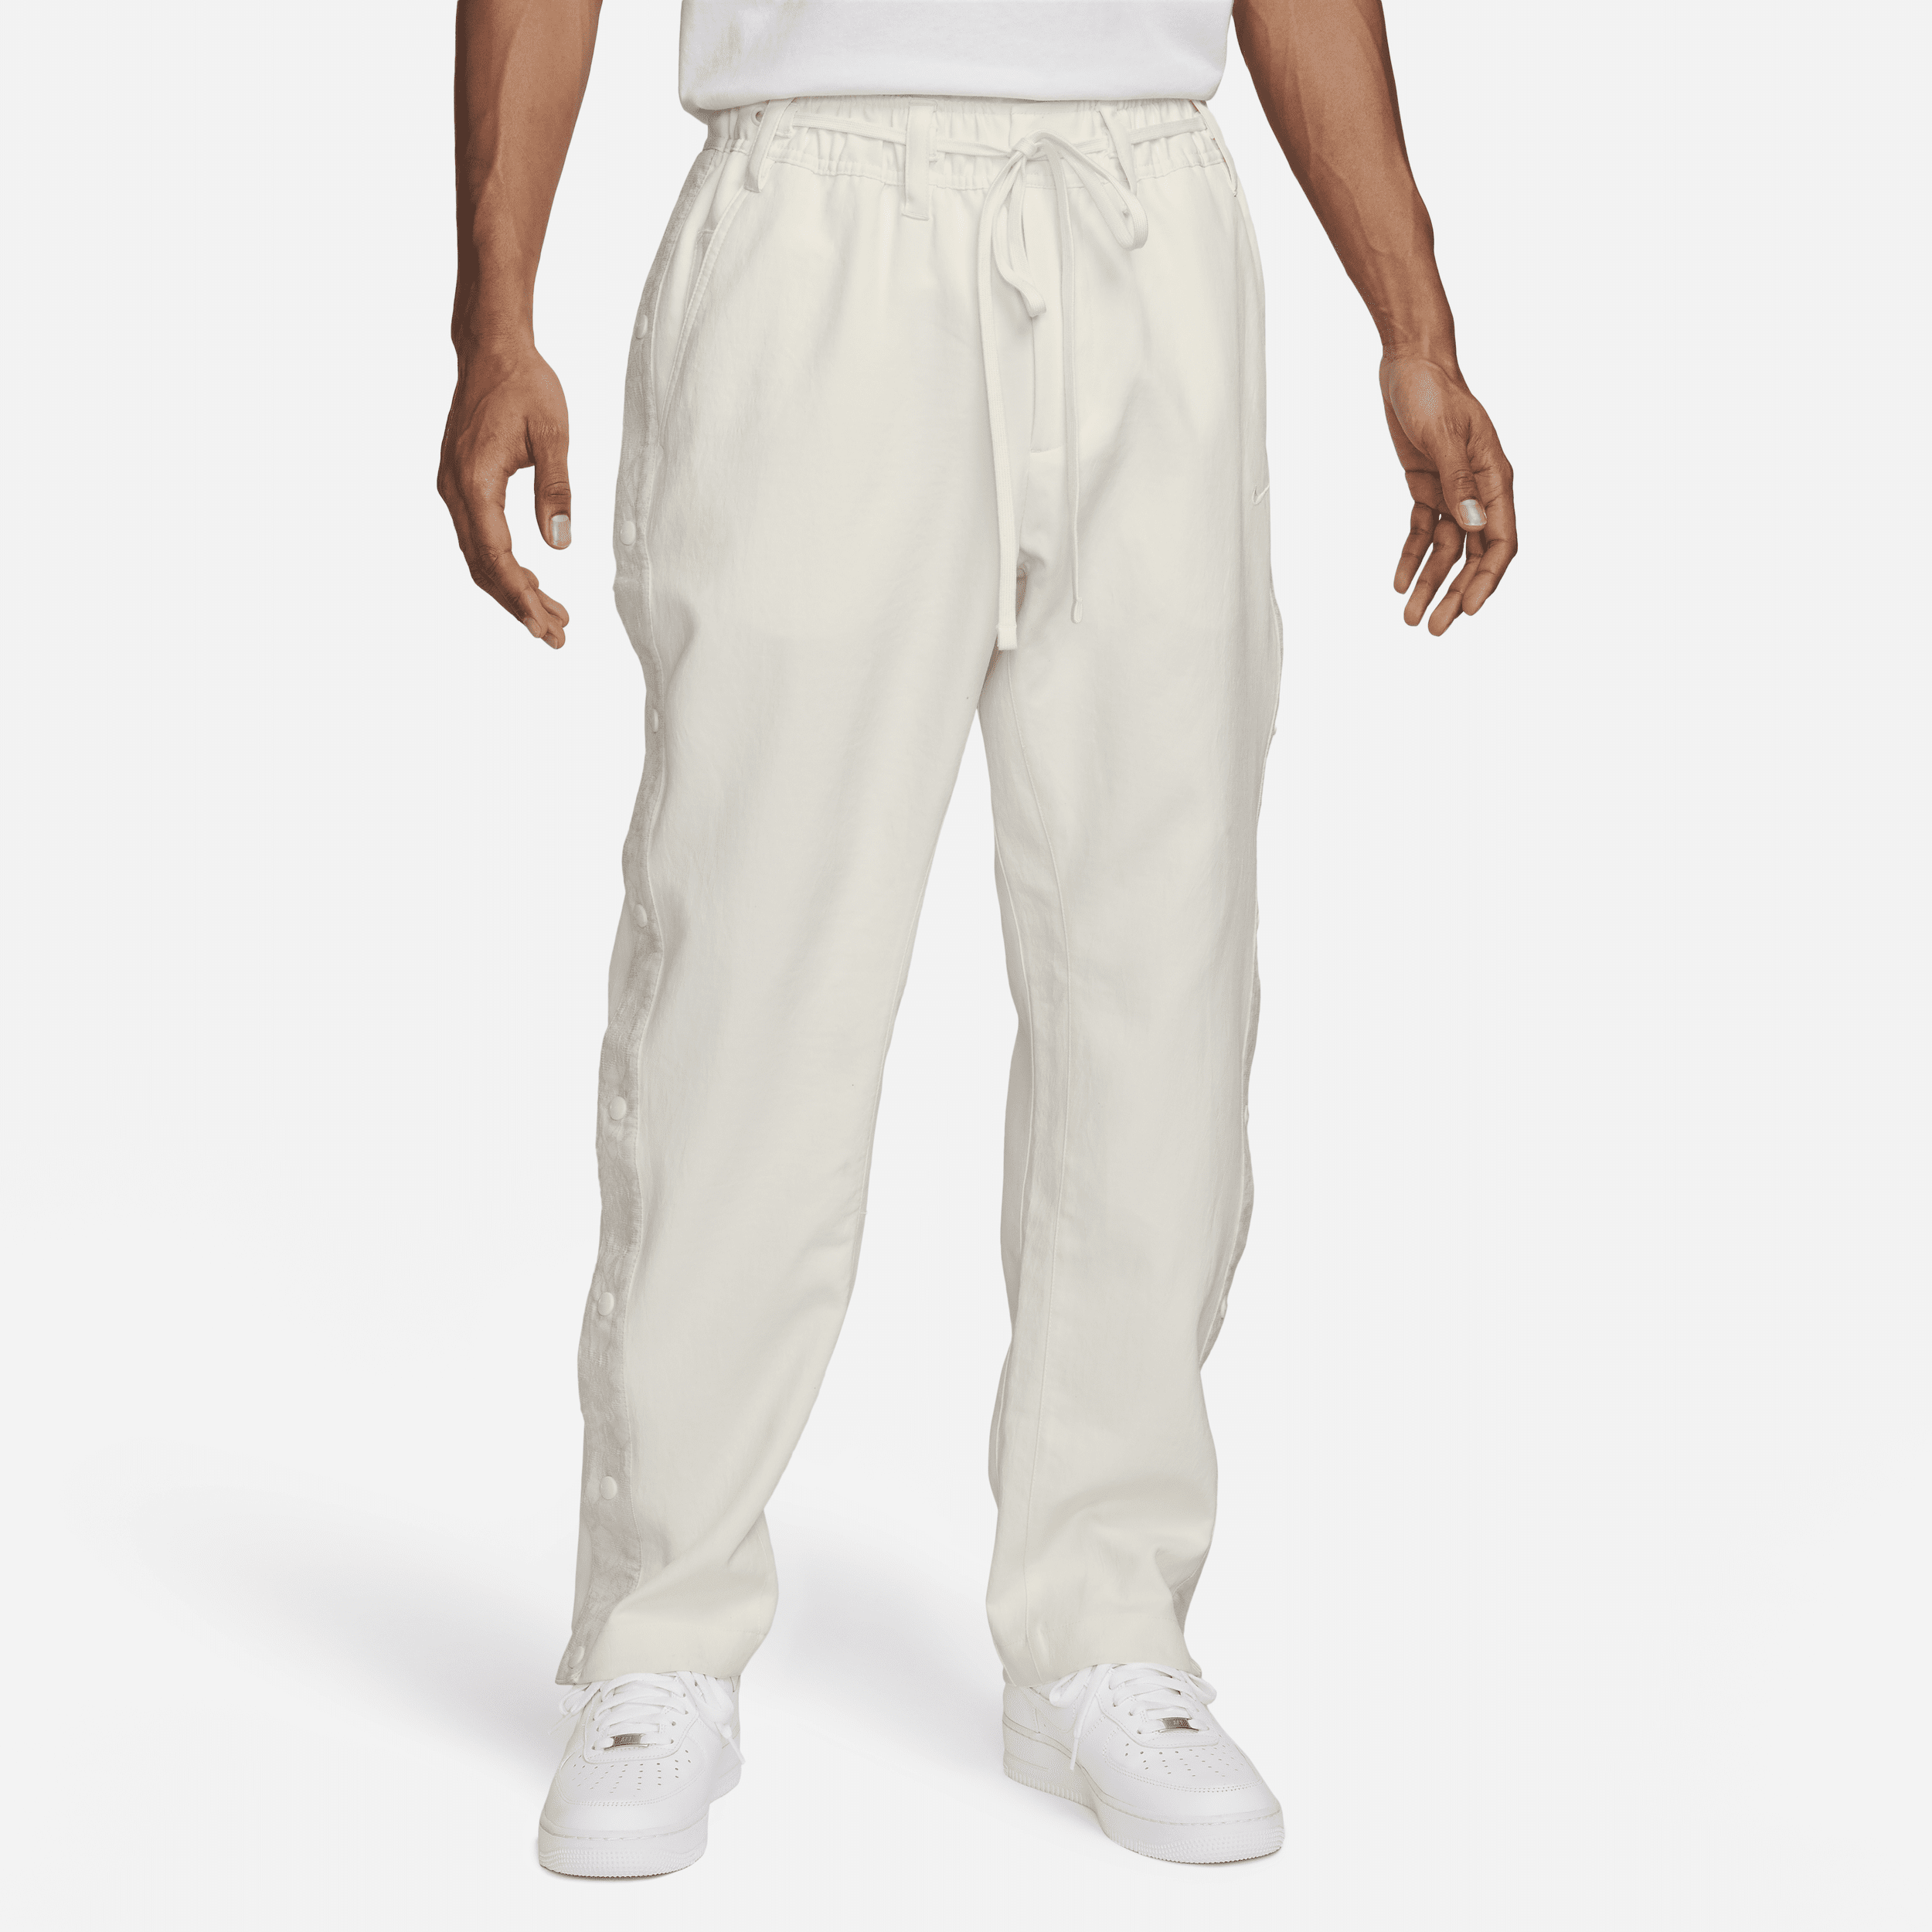 Nike Pantalón de baloncesto con botones a presión - Hombre - Blanco